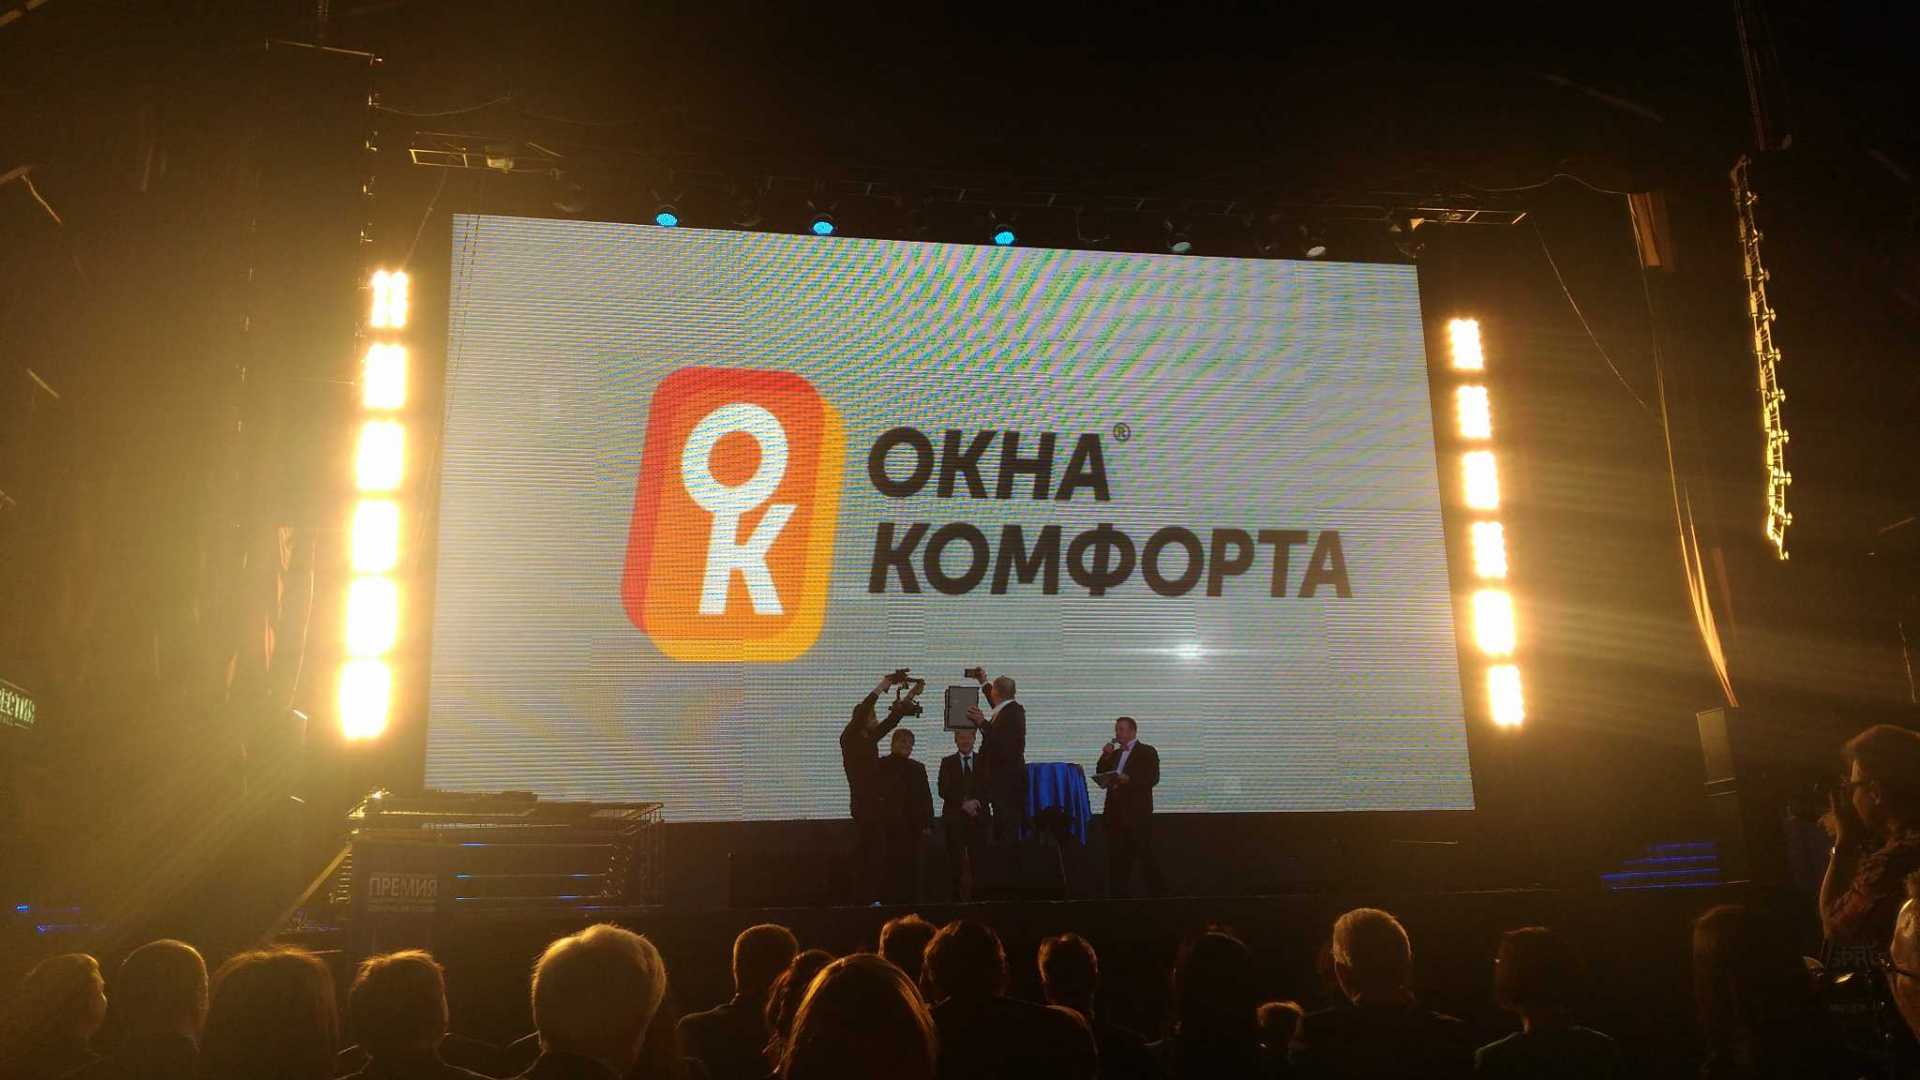 Победа в номинации Продукт года 2015 присуждается компании Окна Комфорта